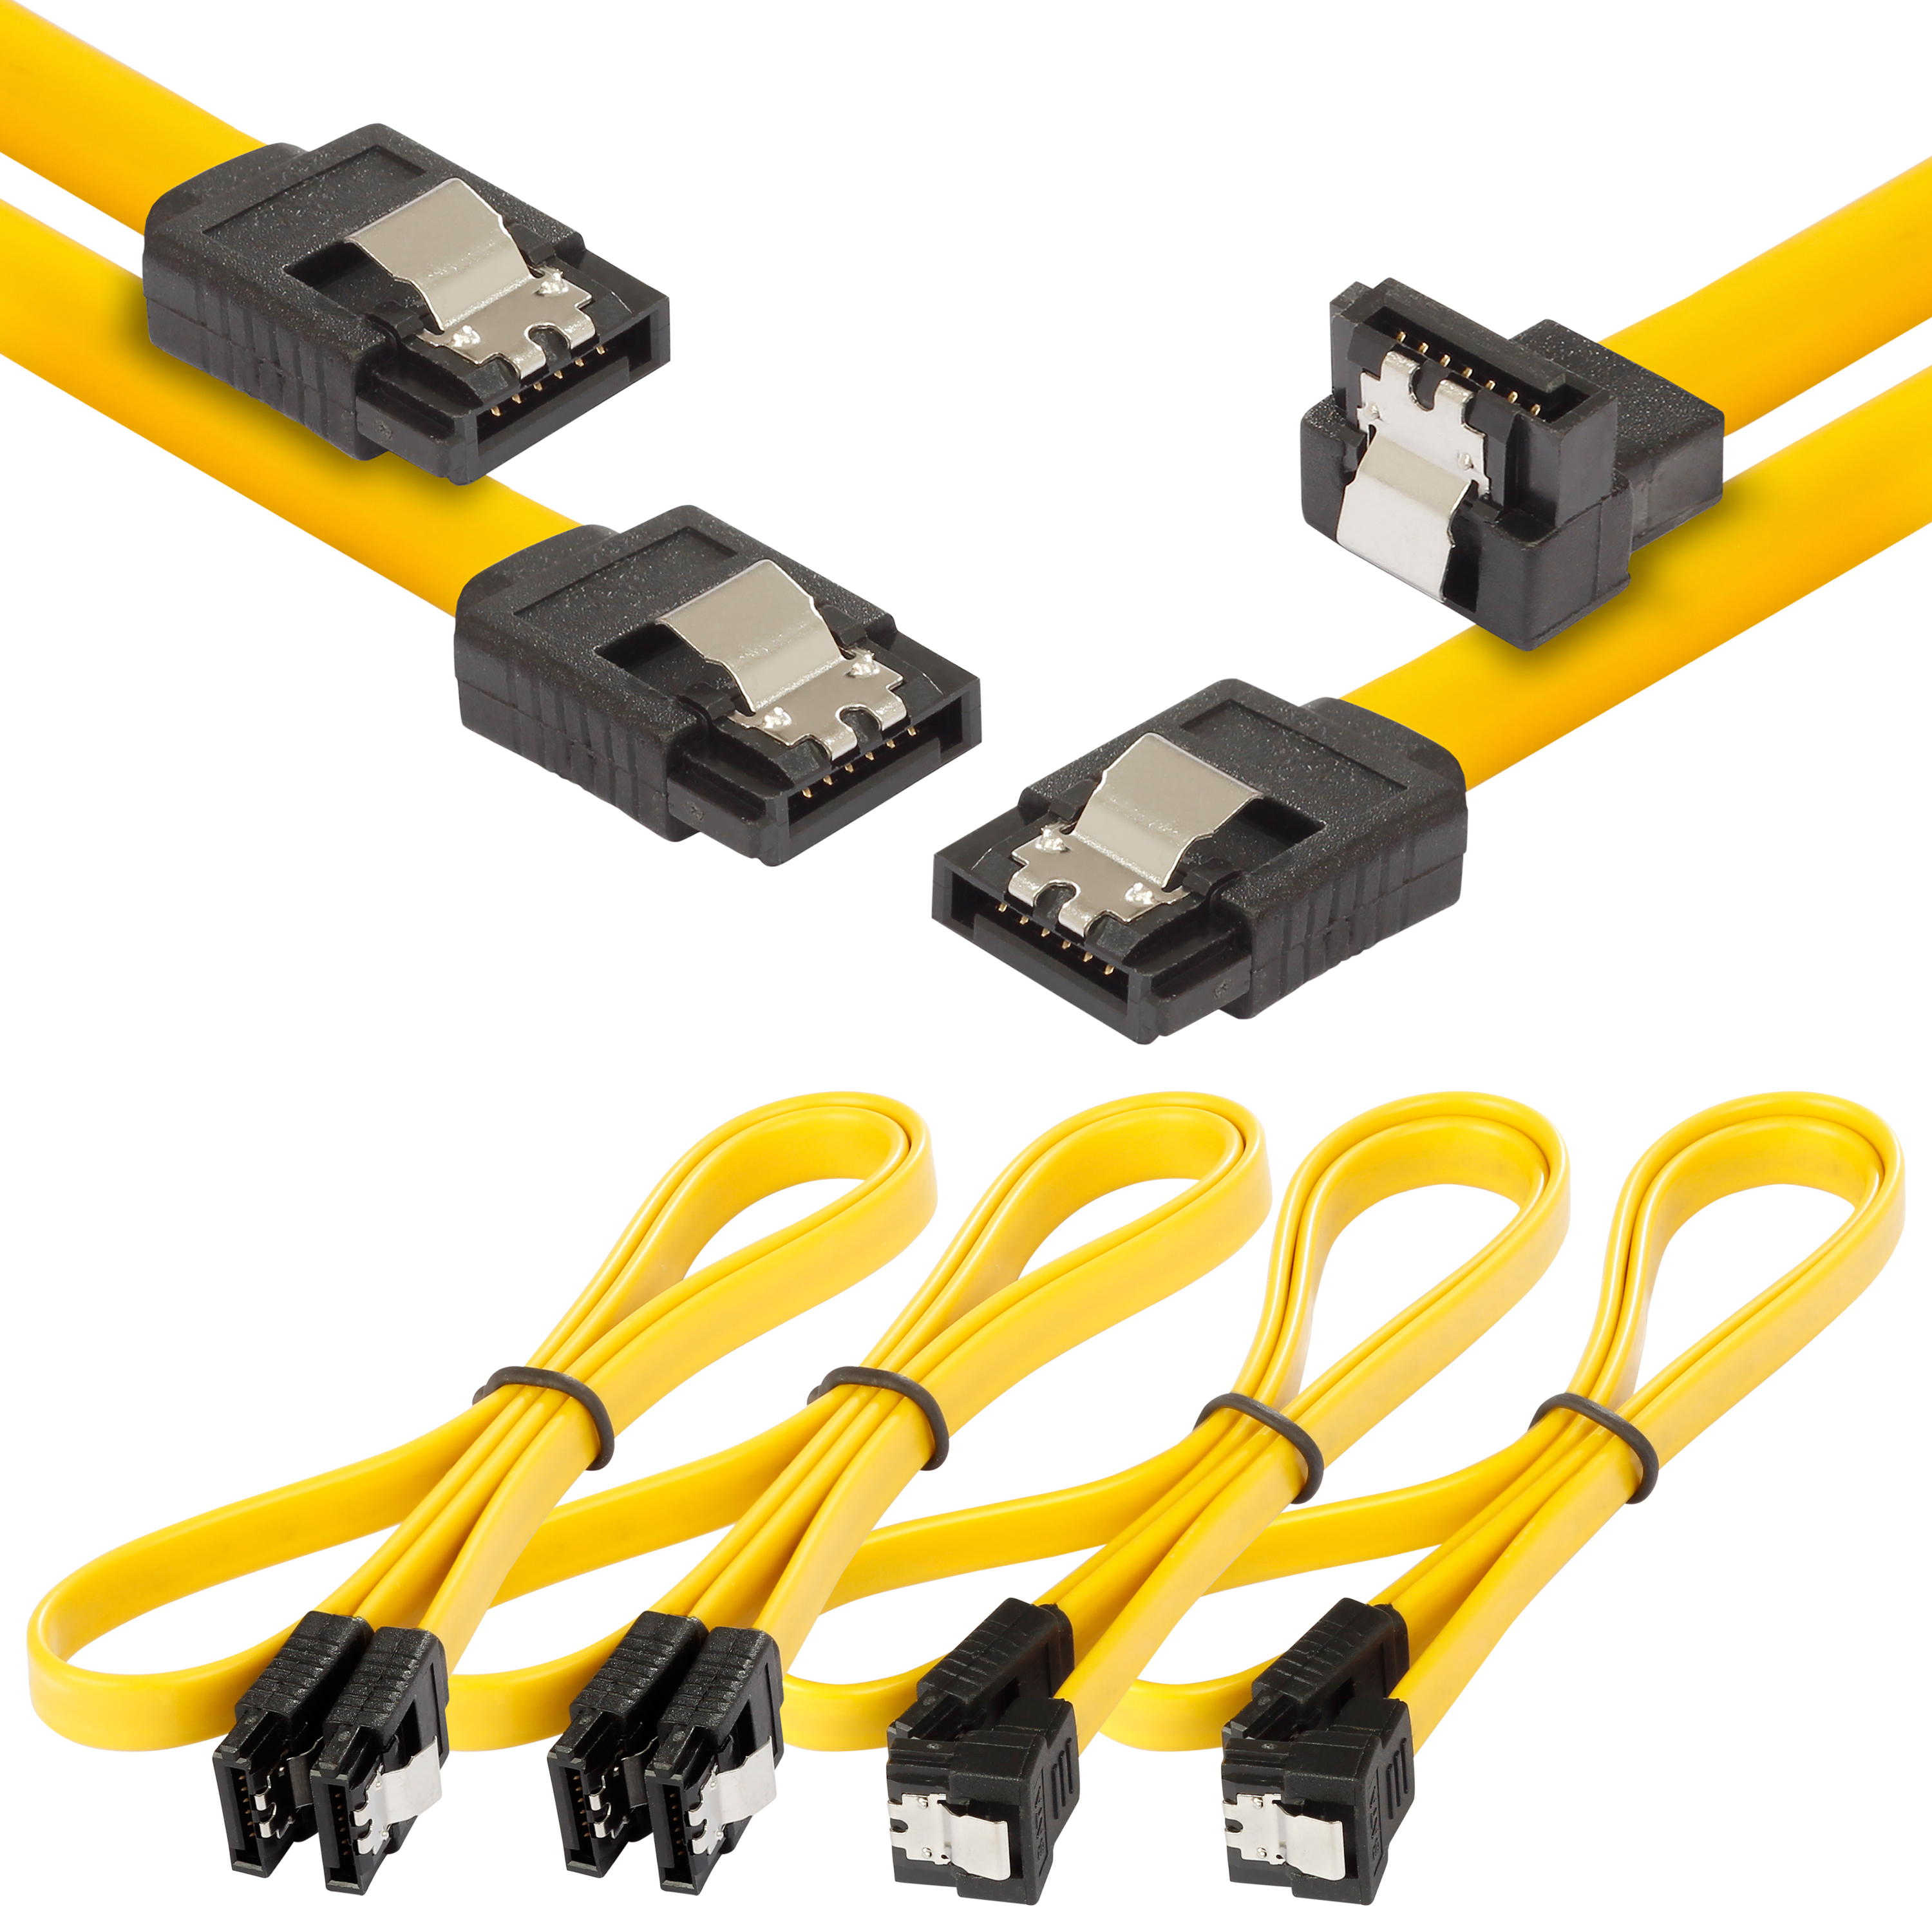 Sata 3 Kabel 0,5m, gerader/gewinkelter Stecker, 4 Stück, gelb